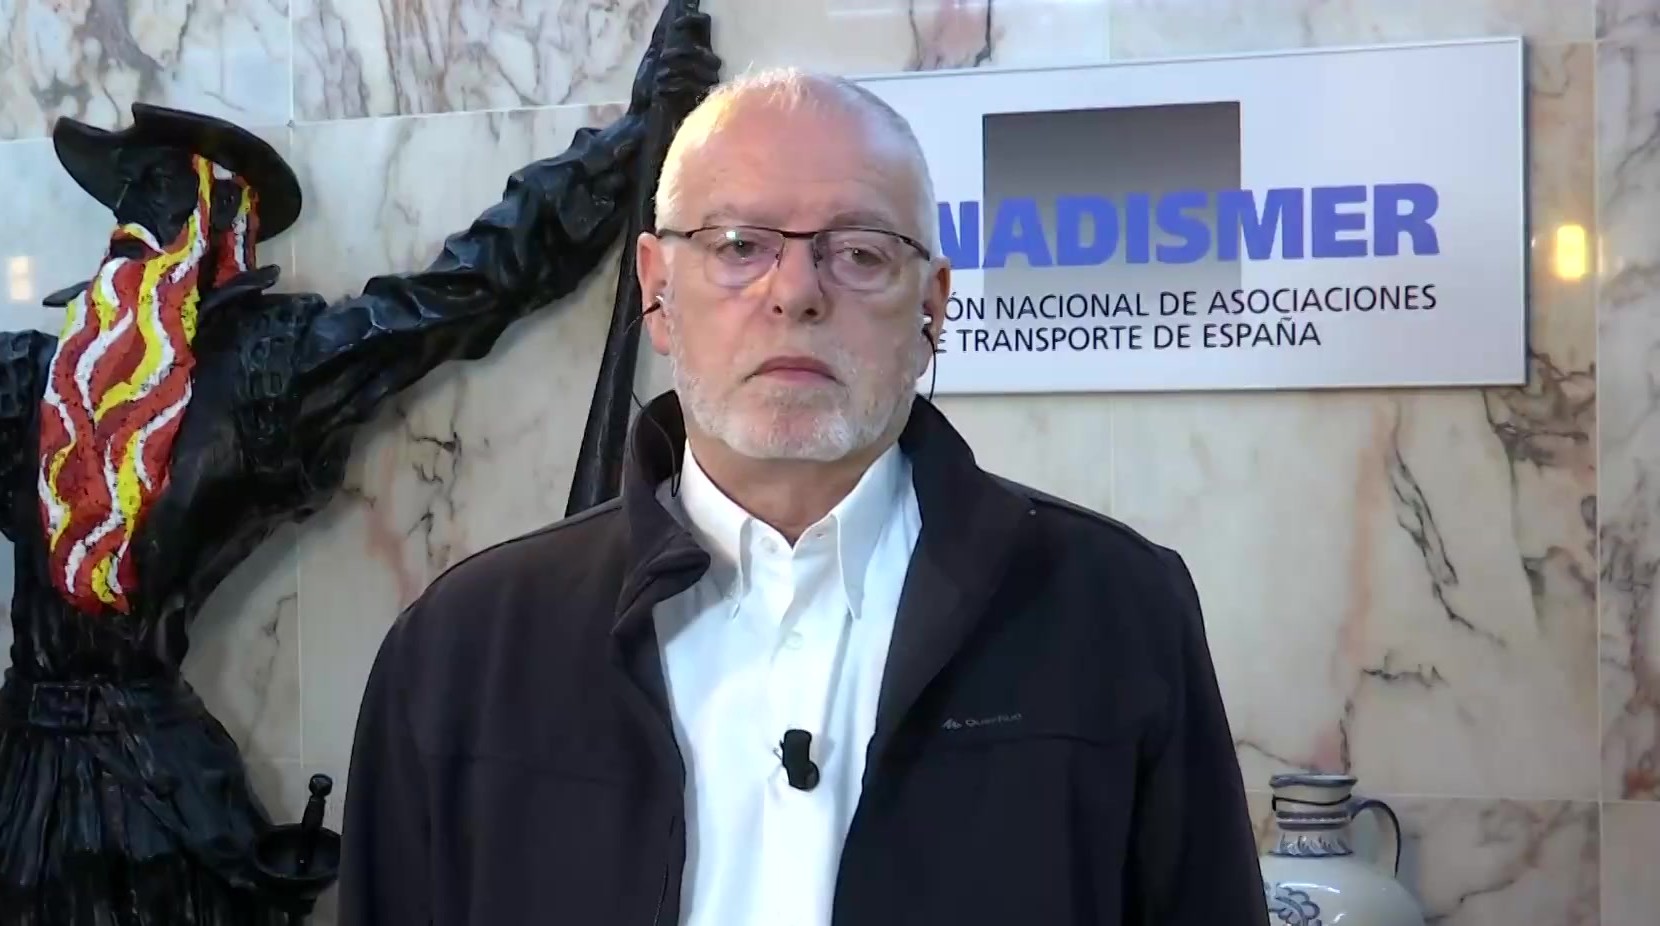 Ir al Video Julio Villaescusa, presidente de FENADISMER: "Habrá desabastecimiento si seguimos en esta situación"